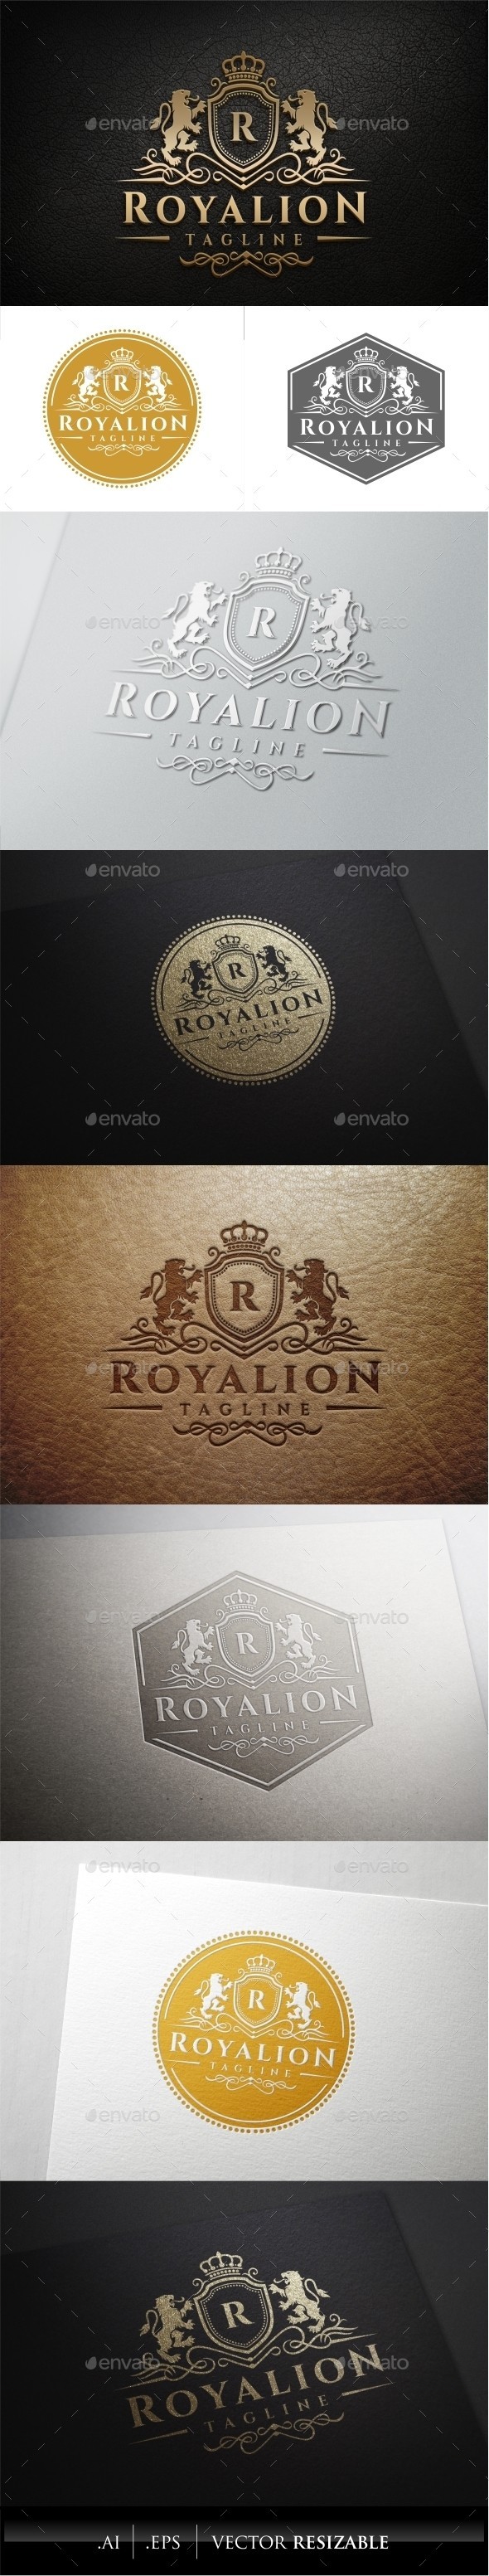 Royal 20lion 20logo 20template 20 preview